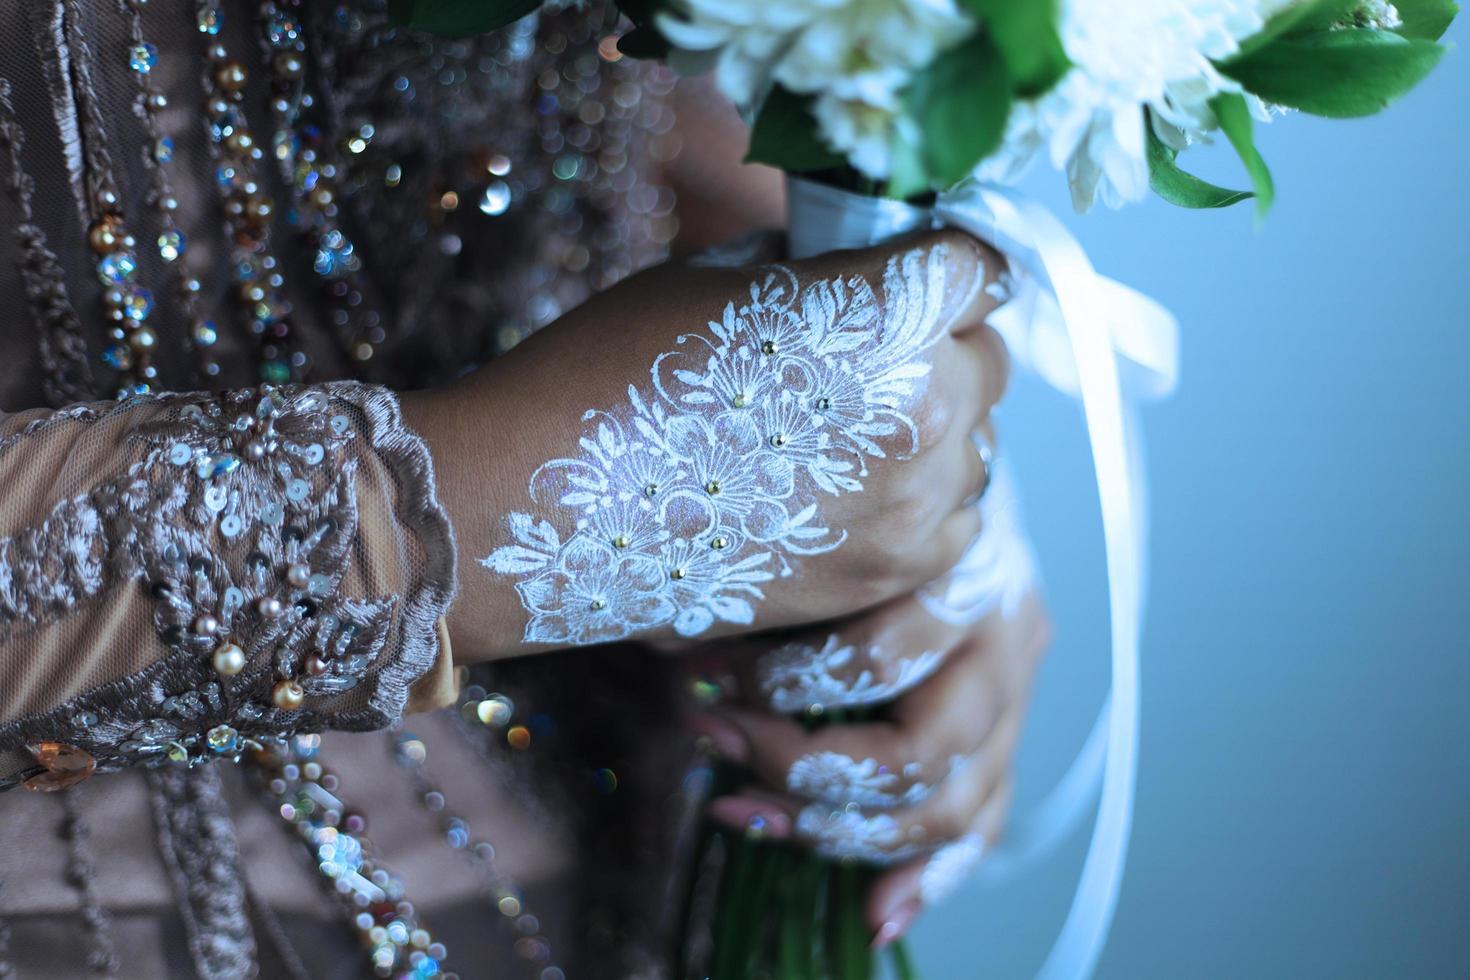 Braut-Henna schön und einzigartig in der Hand der Braut geschnitzt foto